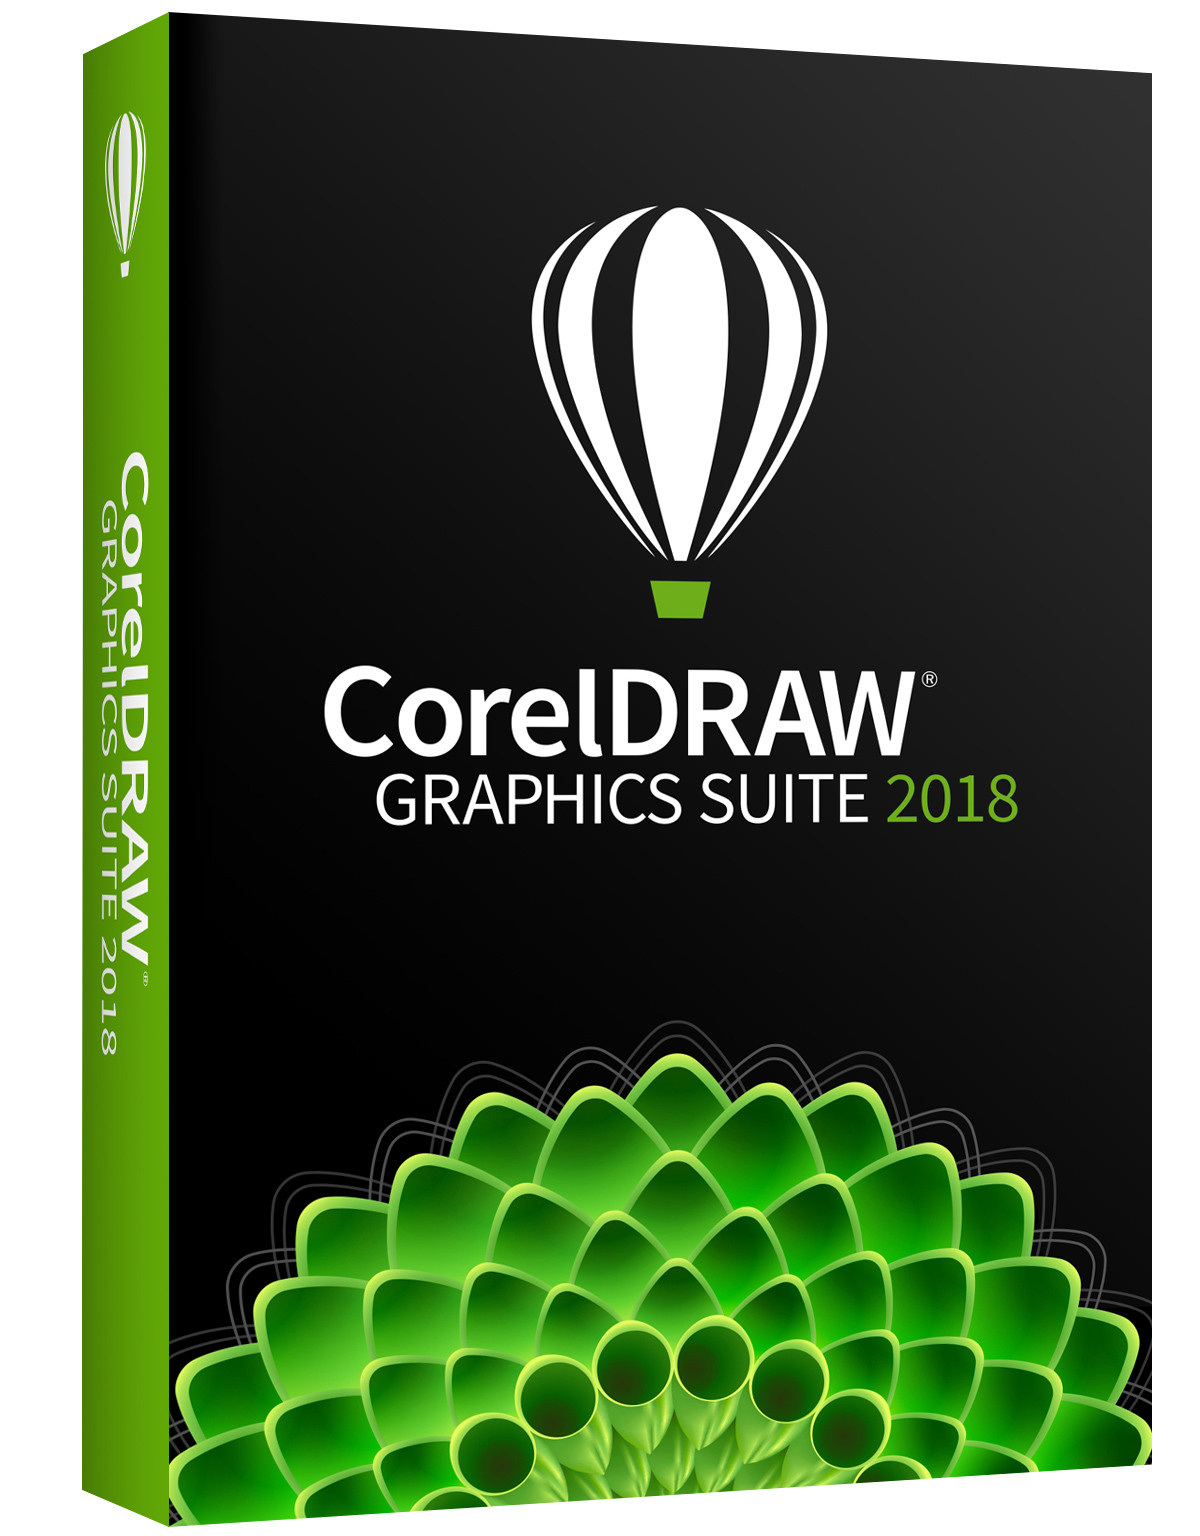 Corel suite. Coreldraw. Coreldraw Graphics Suite 2021. Coreldraw Graphics Suite 2018. Coreldraw Graphics Suite 2019.